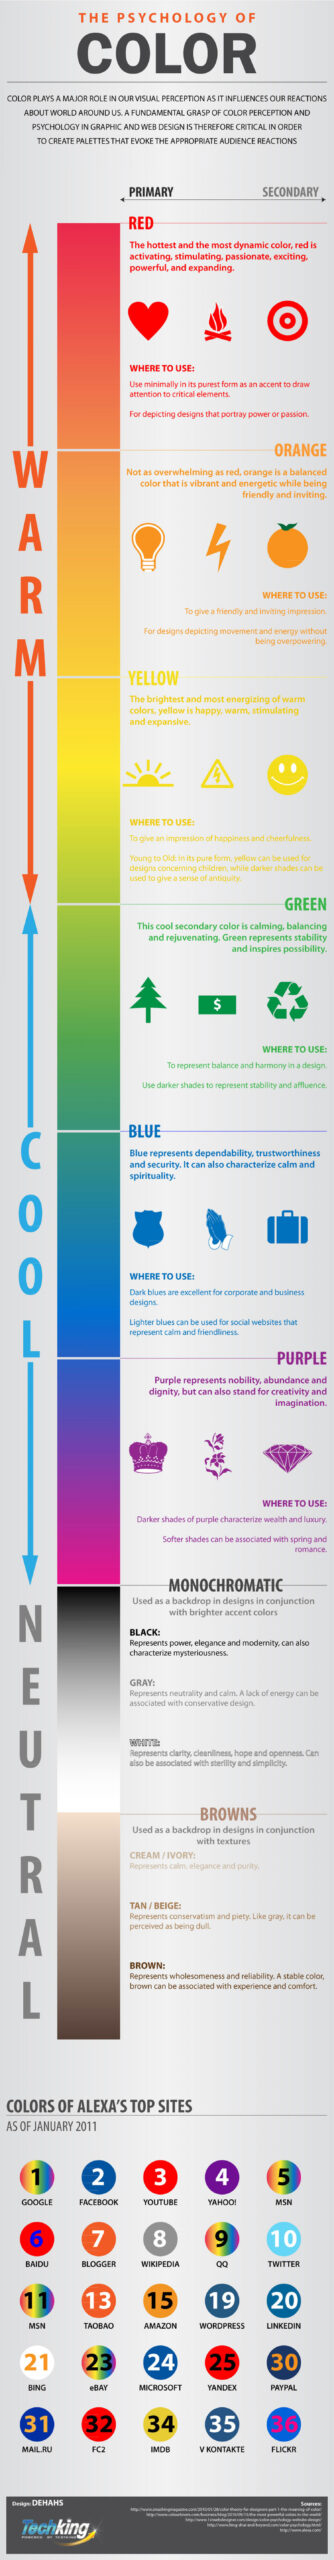 Tips For Harmonious Color Schemes | DesignMantic: The Design Shop